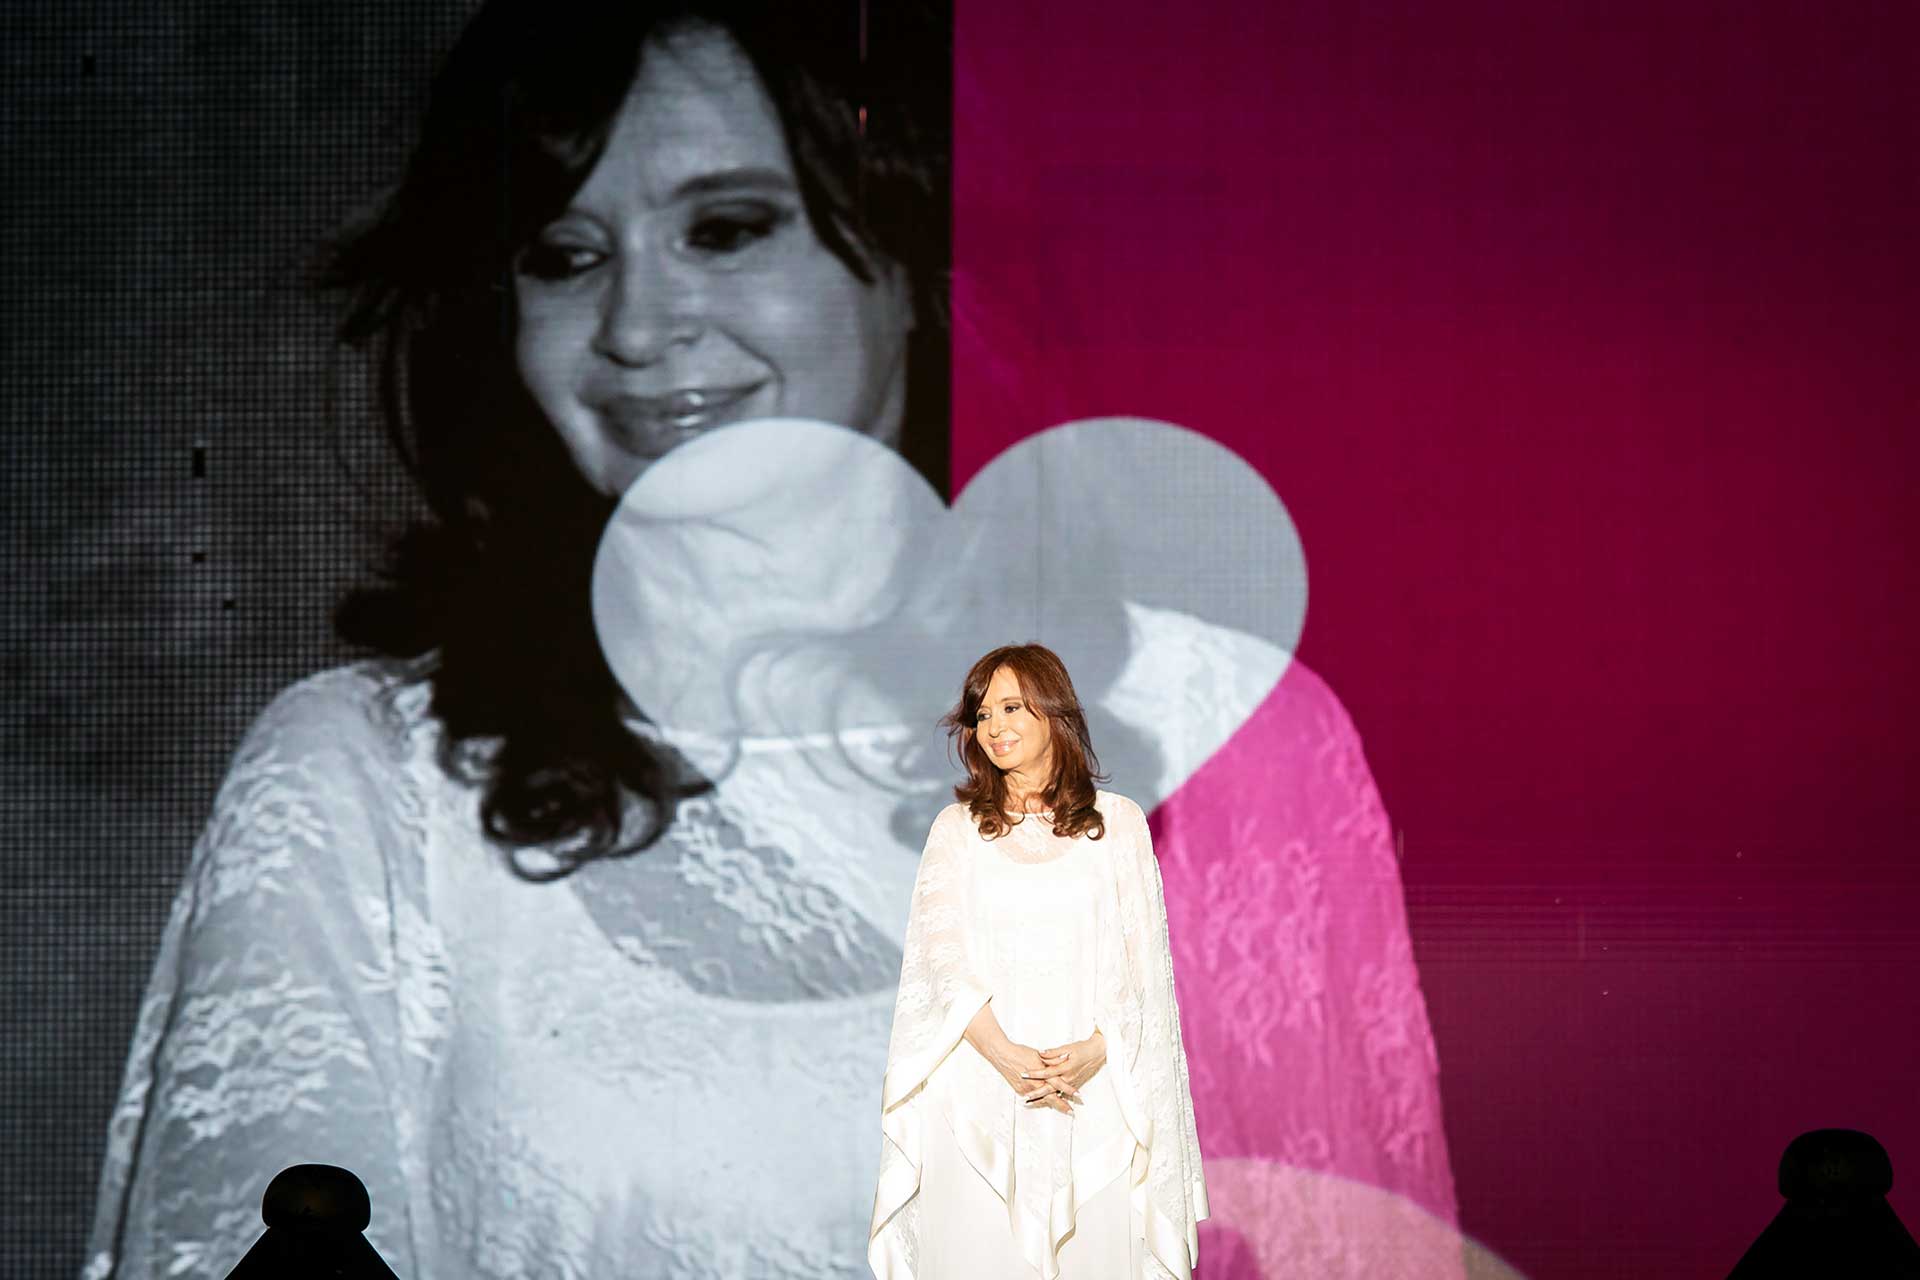 Fotografía de Cristina Fernández de Kirchner, Vicepresidenta de la Nación. De fondo, una pantalla que capta el momento acompañándolo con un corazón